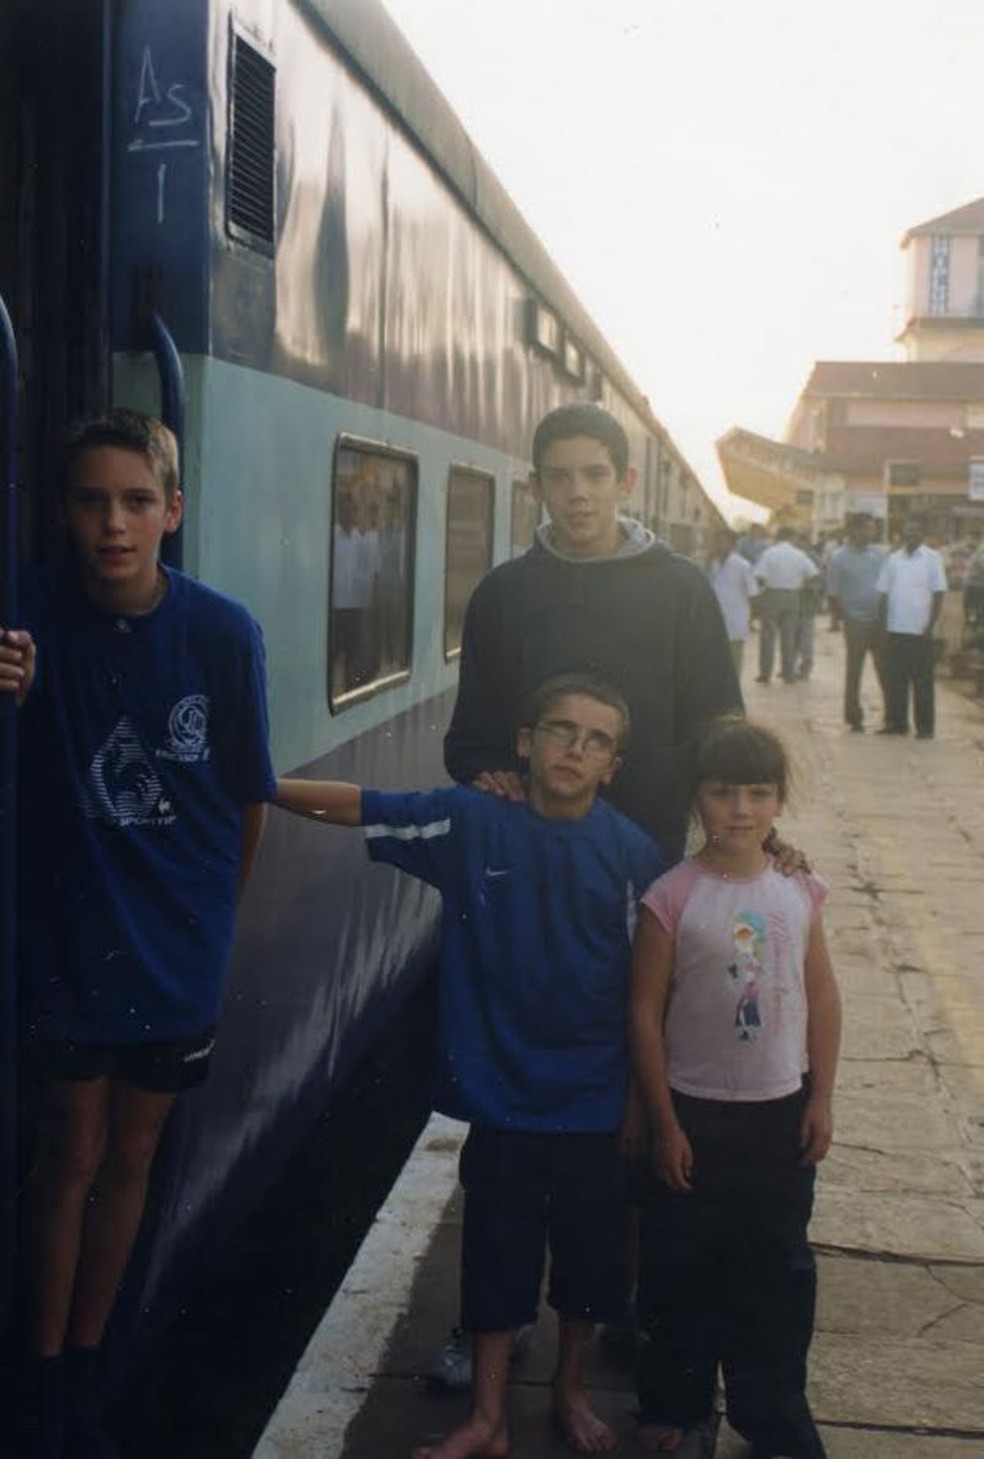 IrmÃ£os Forkan em viagem de Mumbai para Goa, na Ãndia, em 2001: Ã©poca Ã© descrita como "incrÃ­vel" â€” Foto: Gandys London/Arquivo pessoal